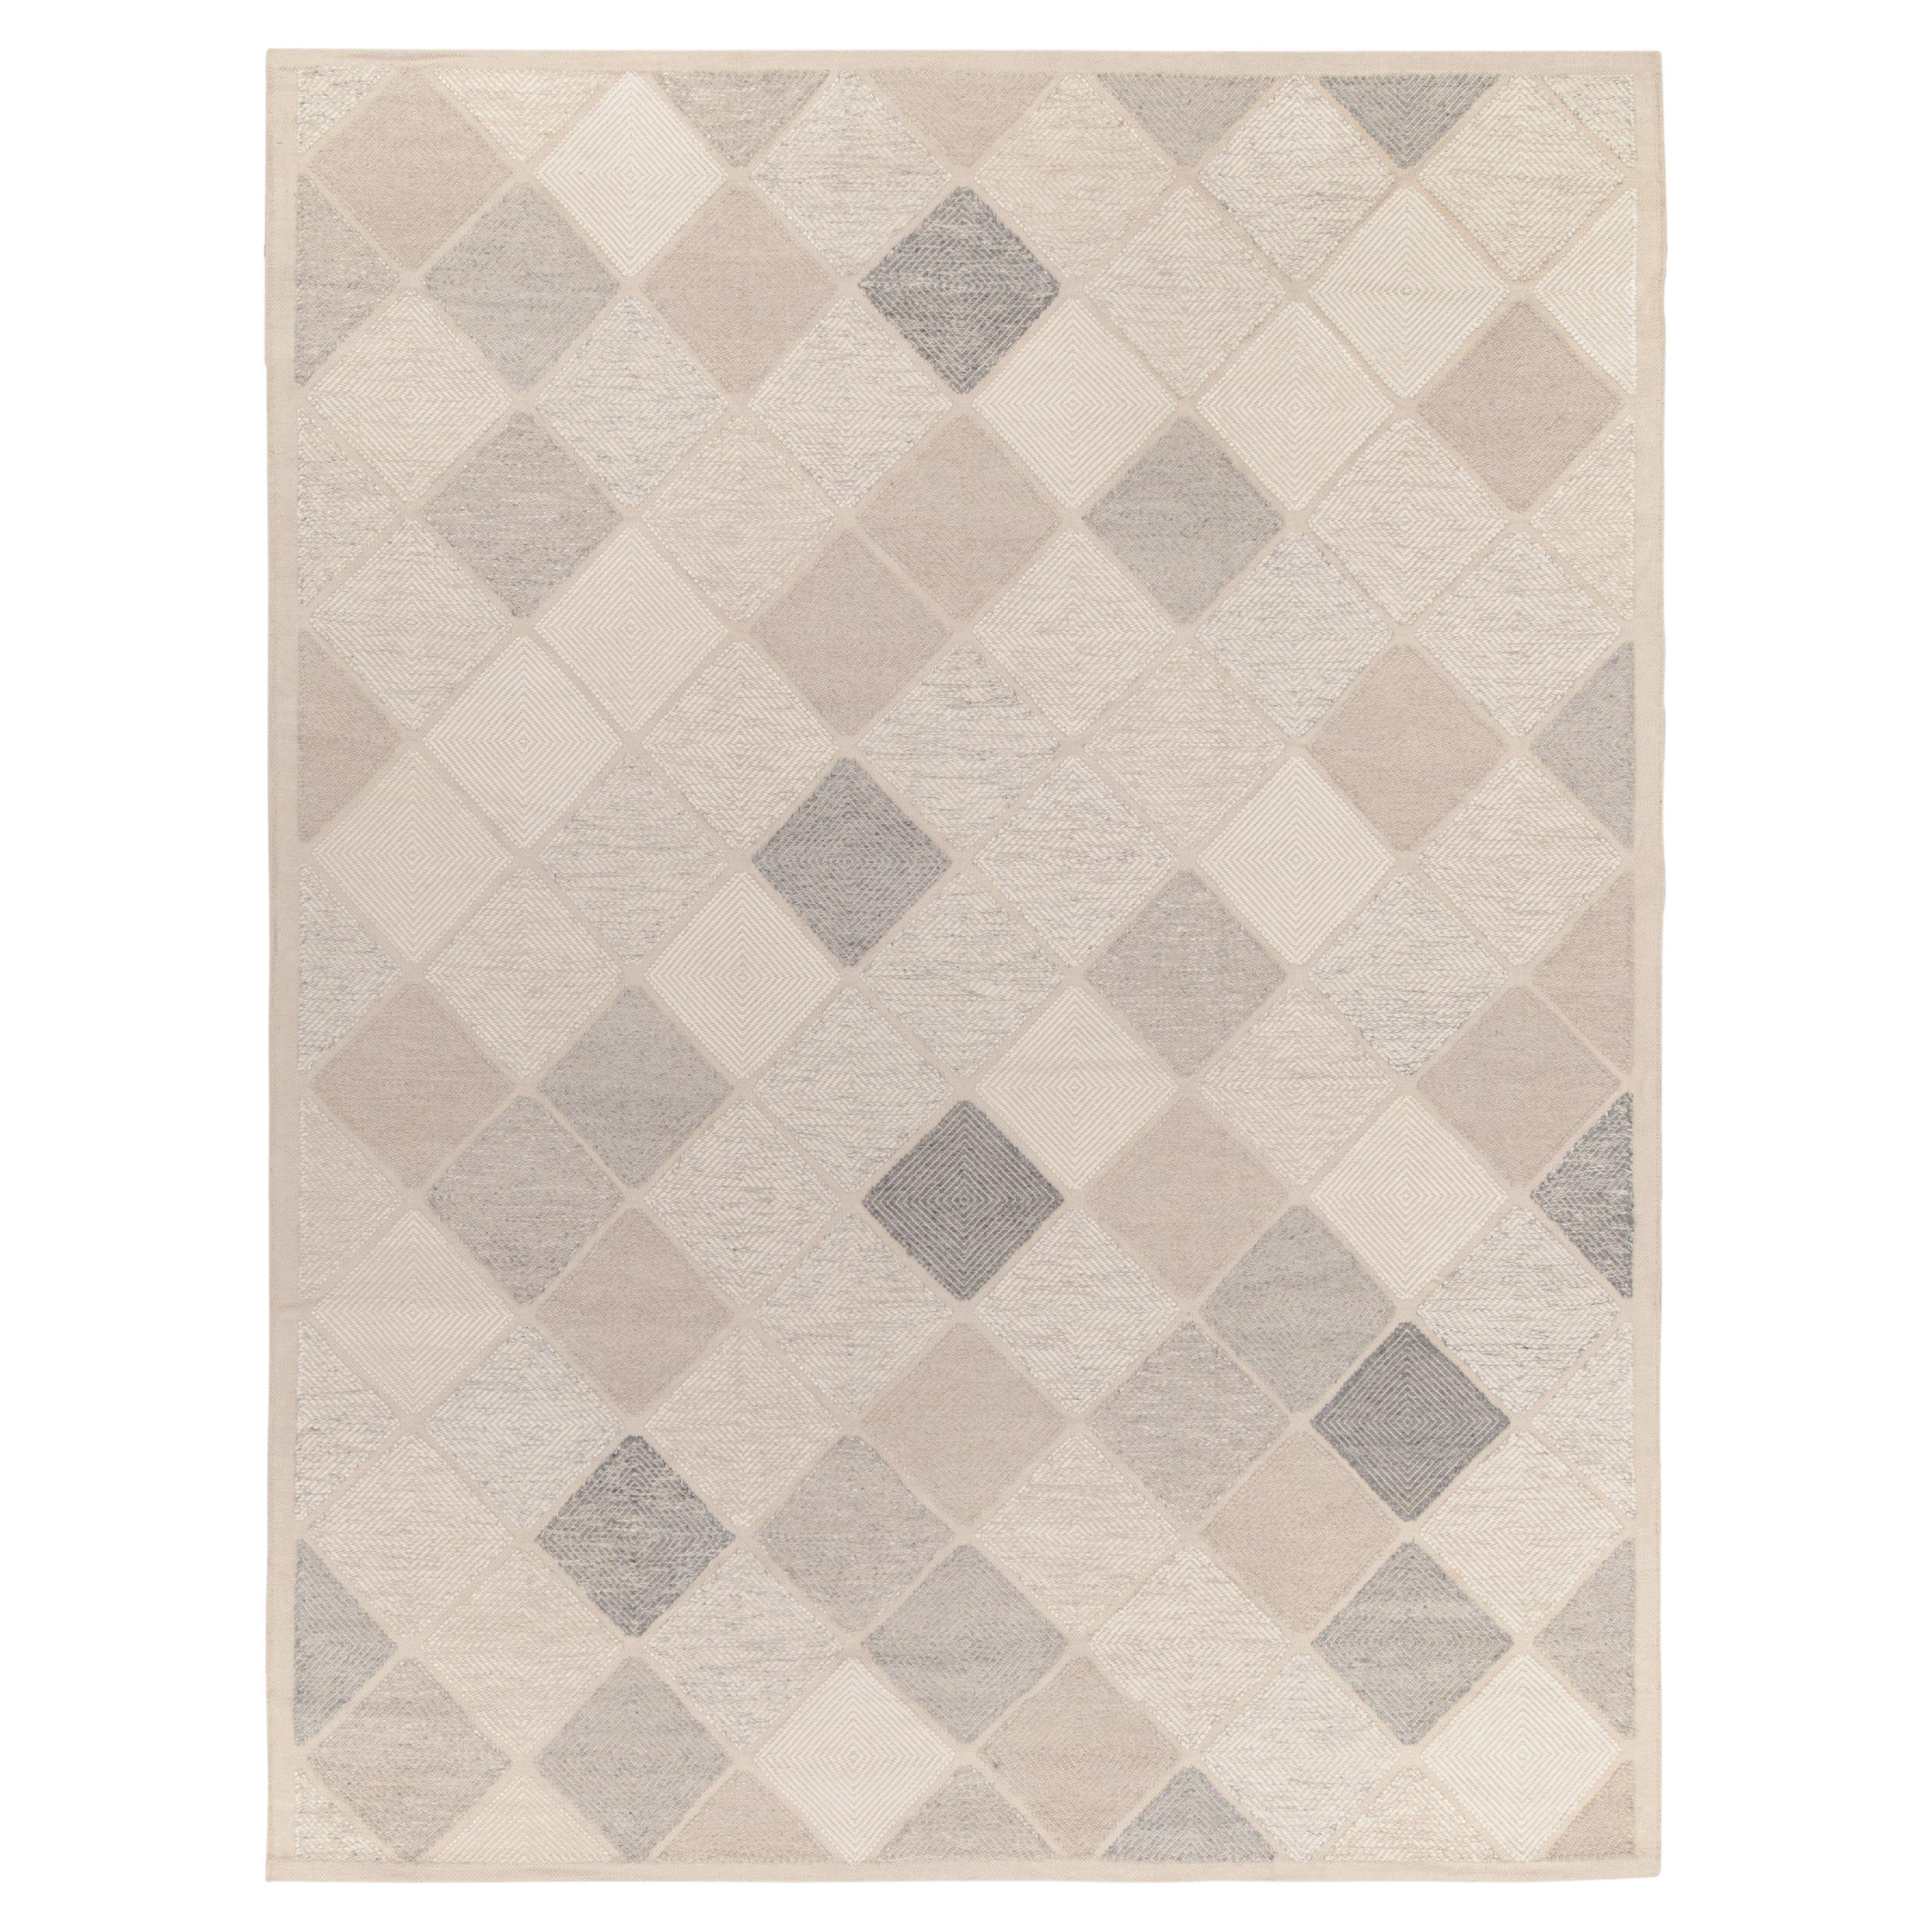 Teppich & Kelim im skandinavischen Stil, maßgefertigter Kelim in Grau, Weiß mit Diamantmuster